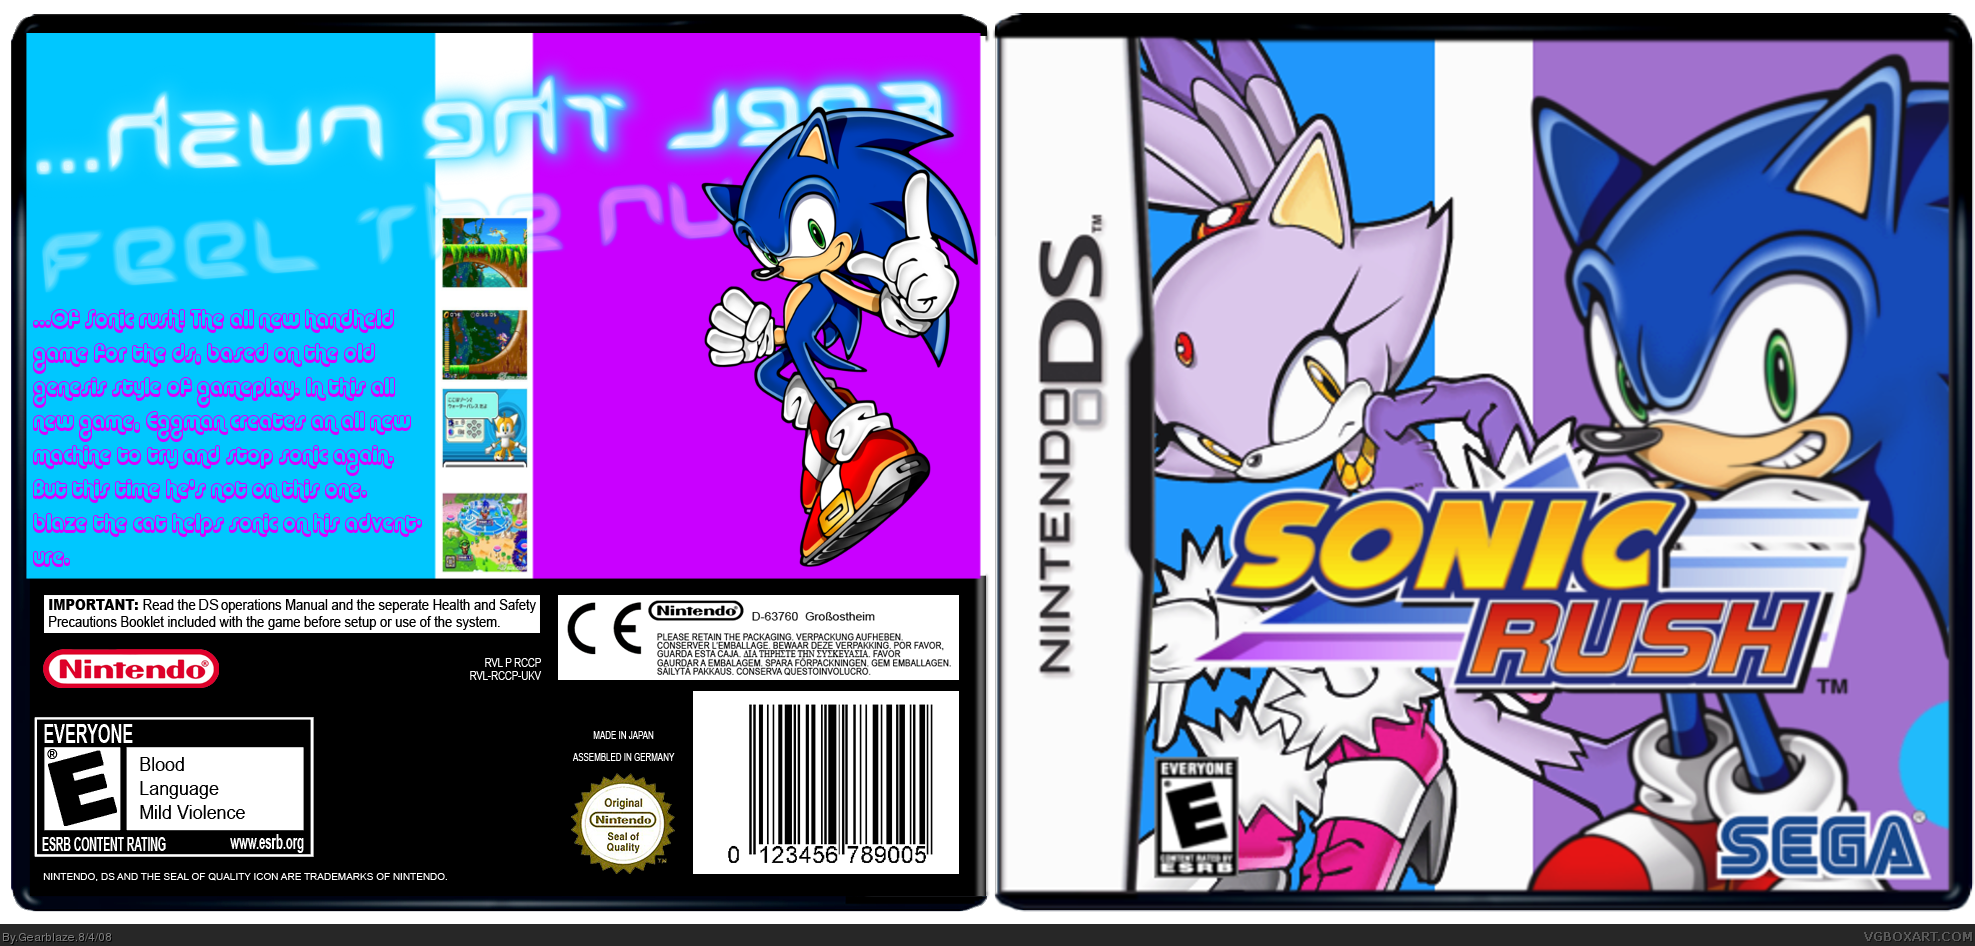 Sonic Rush box cover